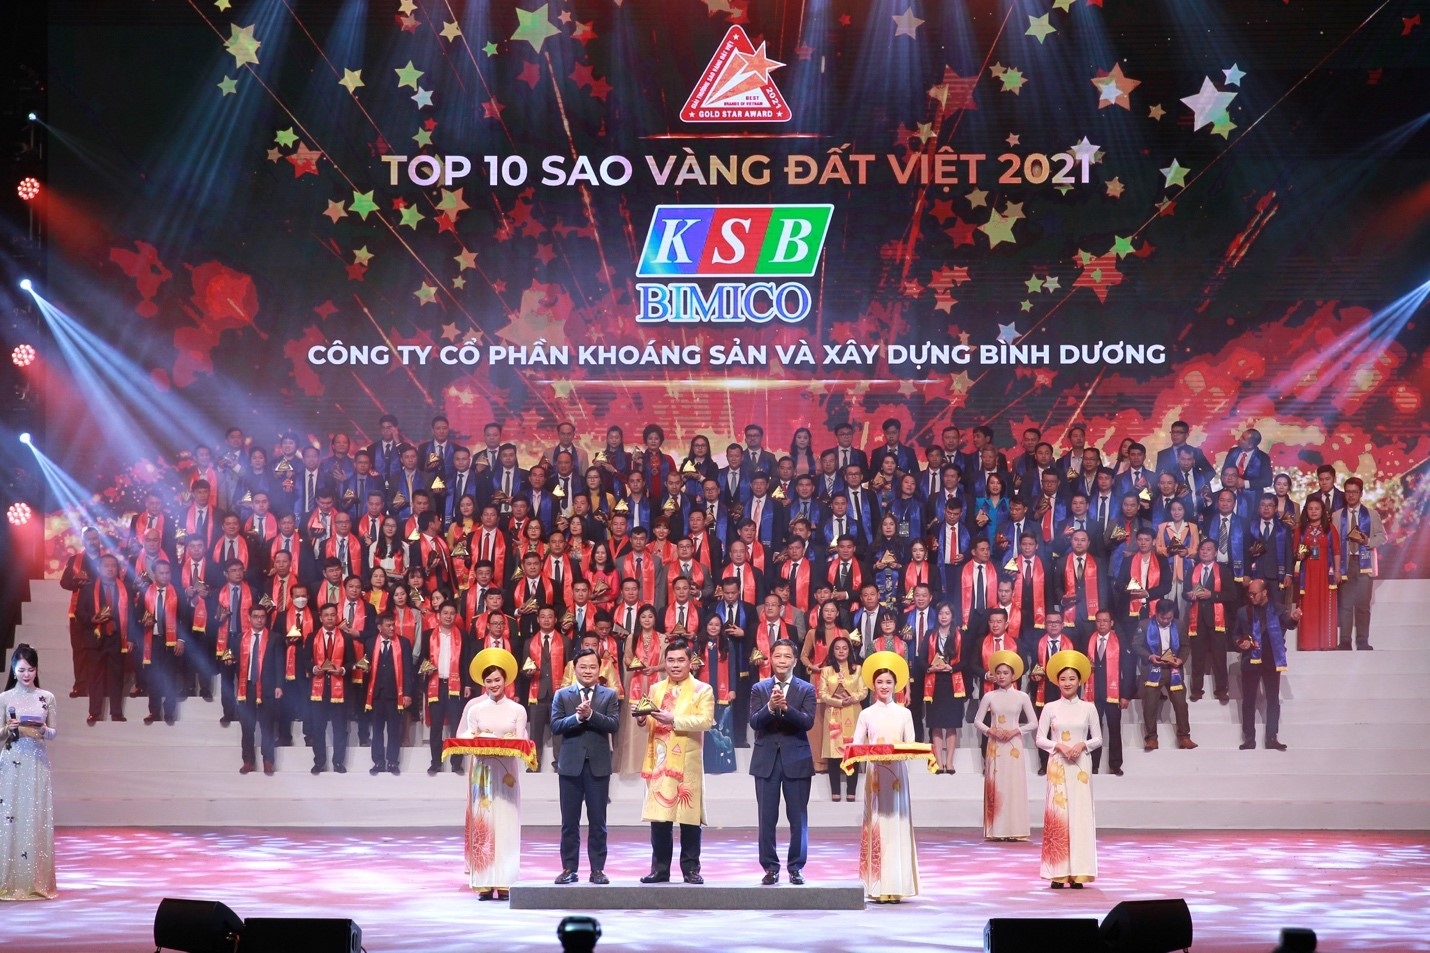 KSB được vinh danh tốp 10 Sao Vàng đất Việt năm 2021 nhờ chiến lược bền vững